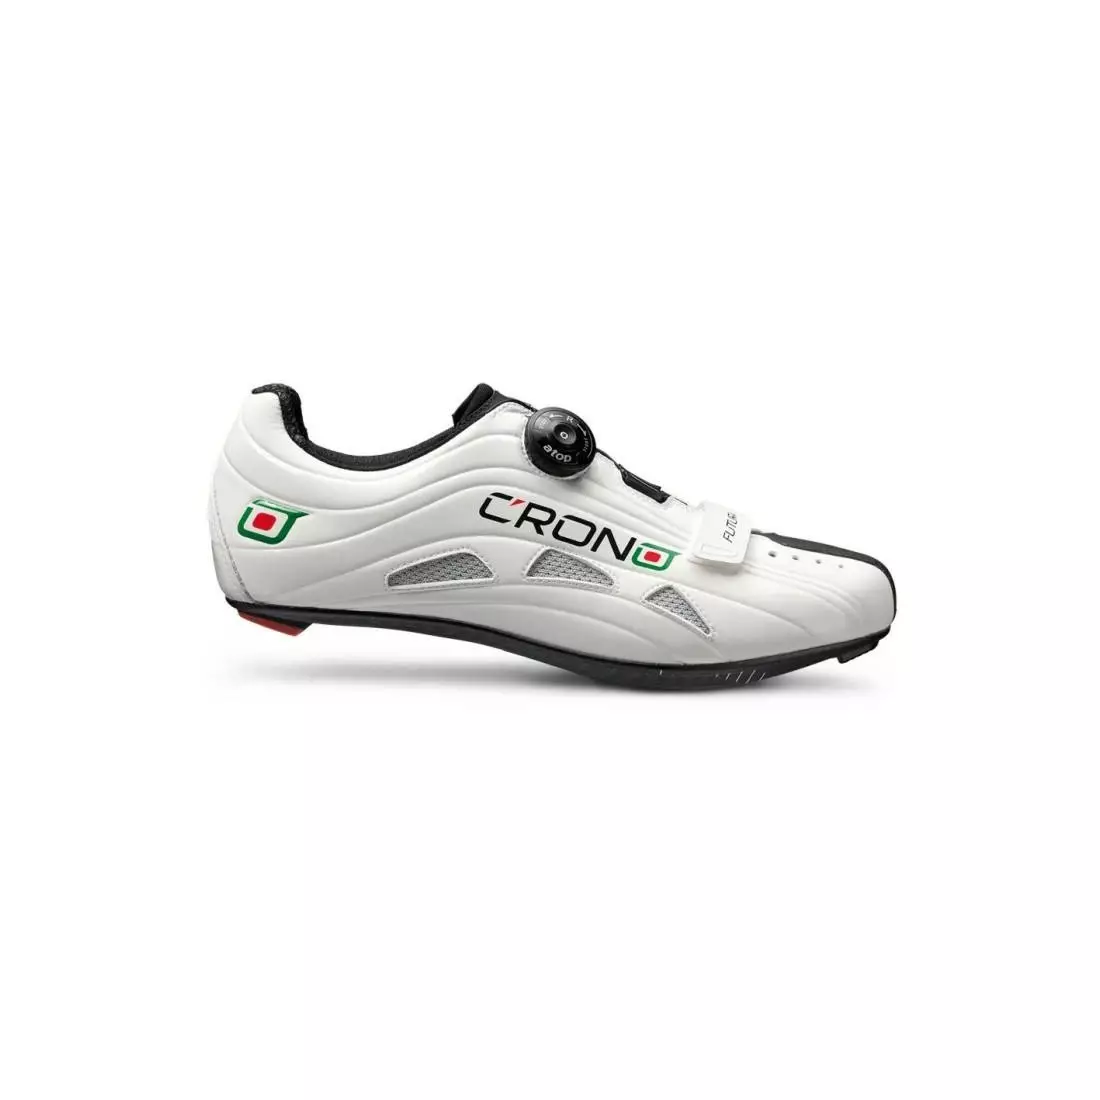 CRONO FUTURA NYLON - országúti kerékpáros cipő - szín: fehér